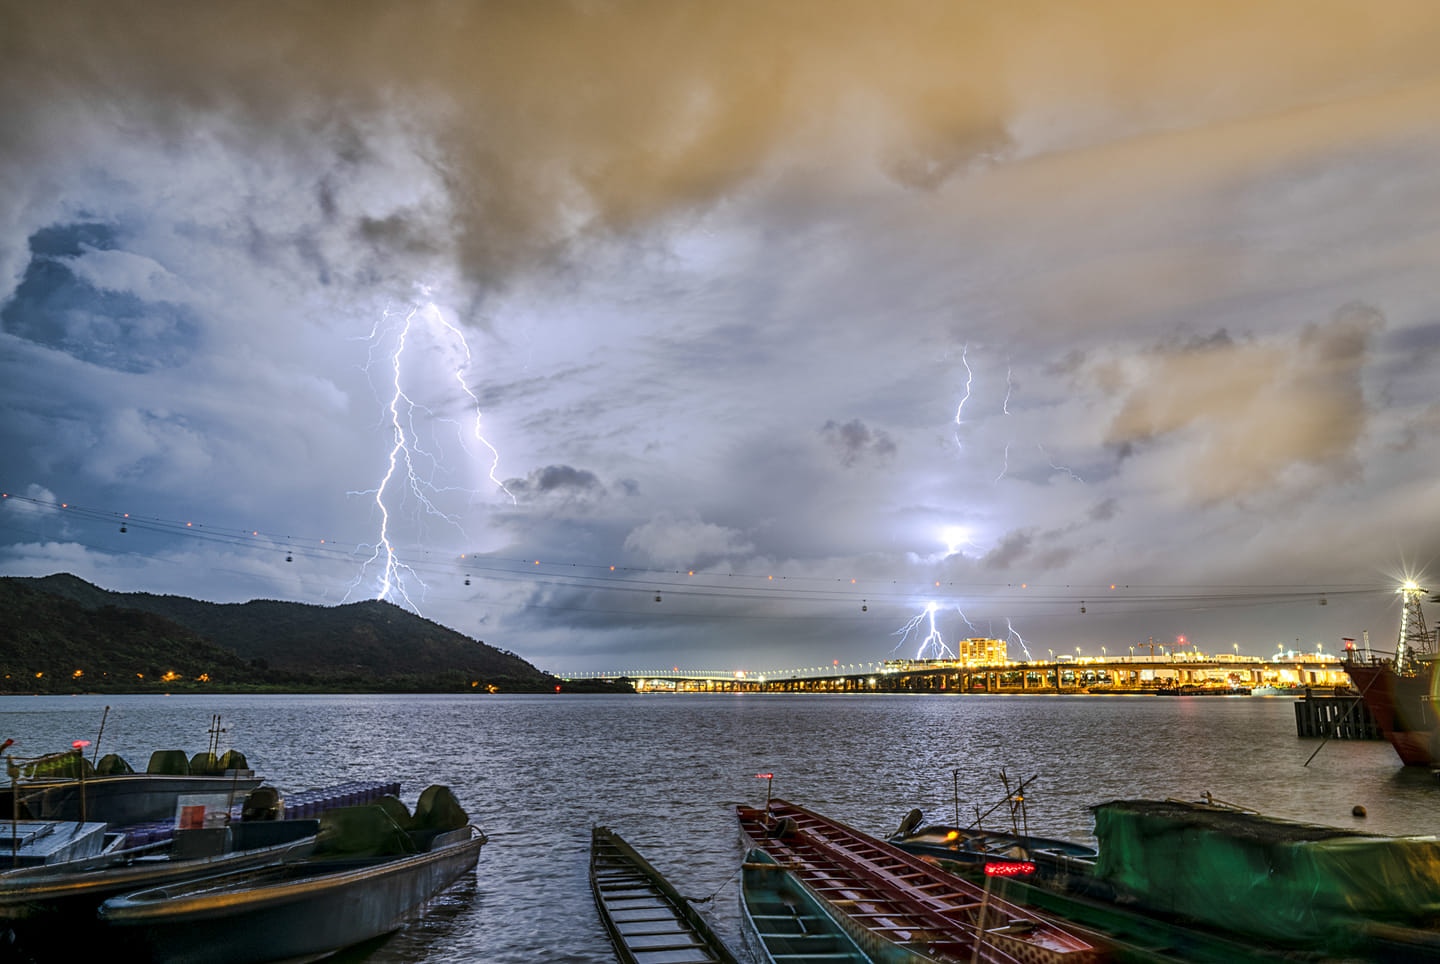 黑色暴雨警告 歷時近3小時閃電逾1 4萬次近10年來單日最多 香港01 天氣